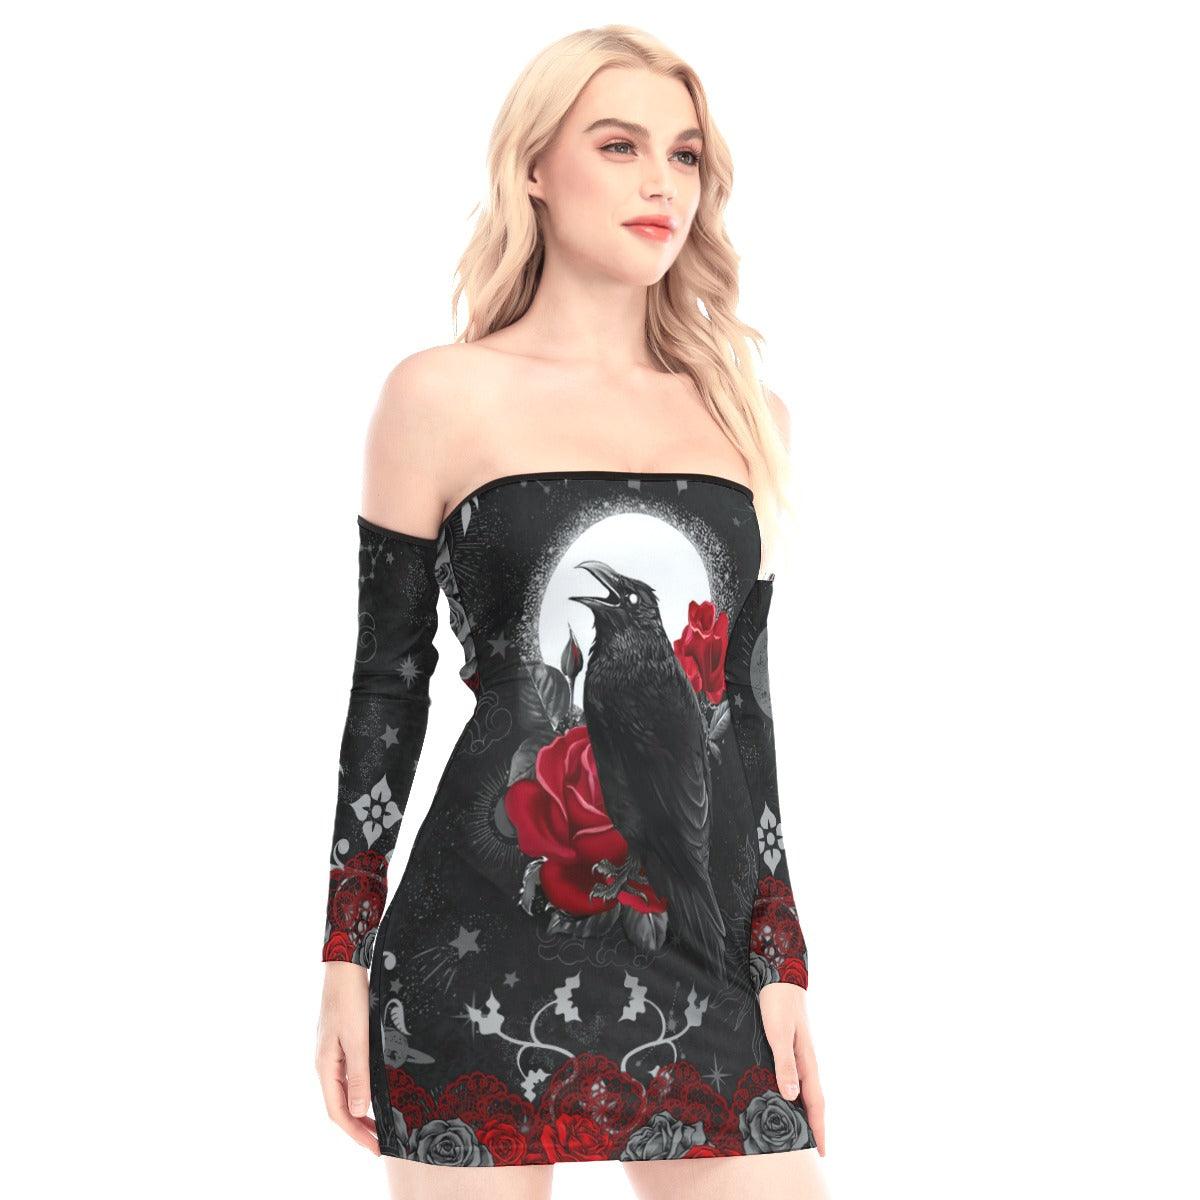 Raven Rose Ornament Off-shoulder Back Lace-up Dress - Wonder Skull